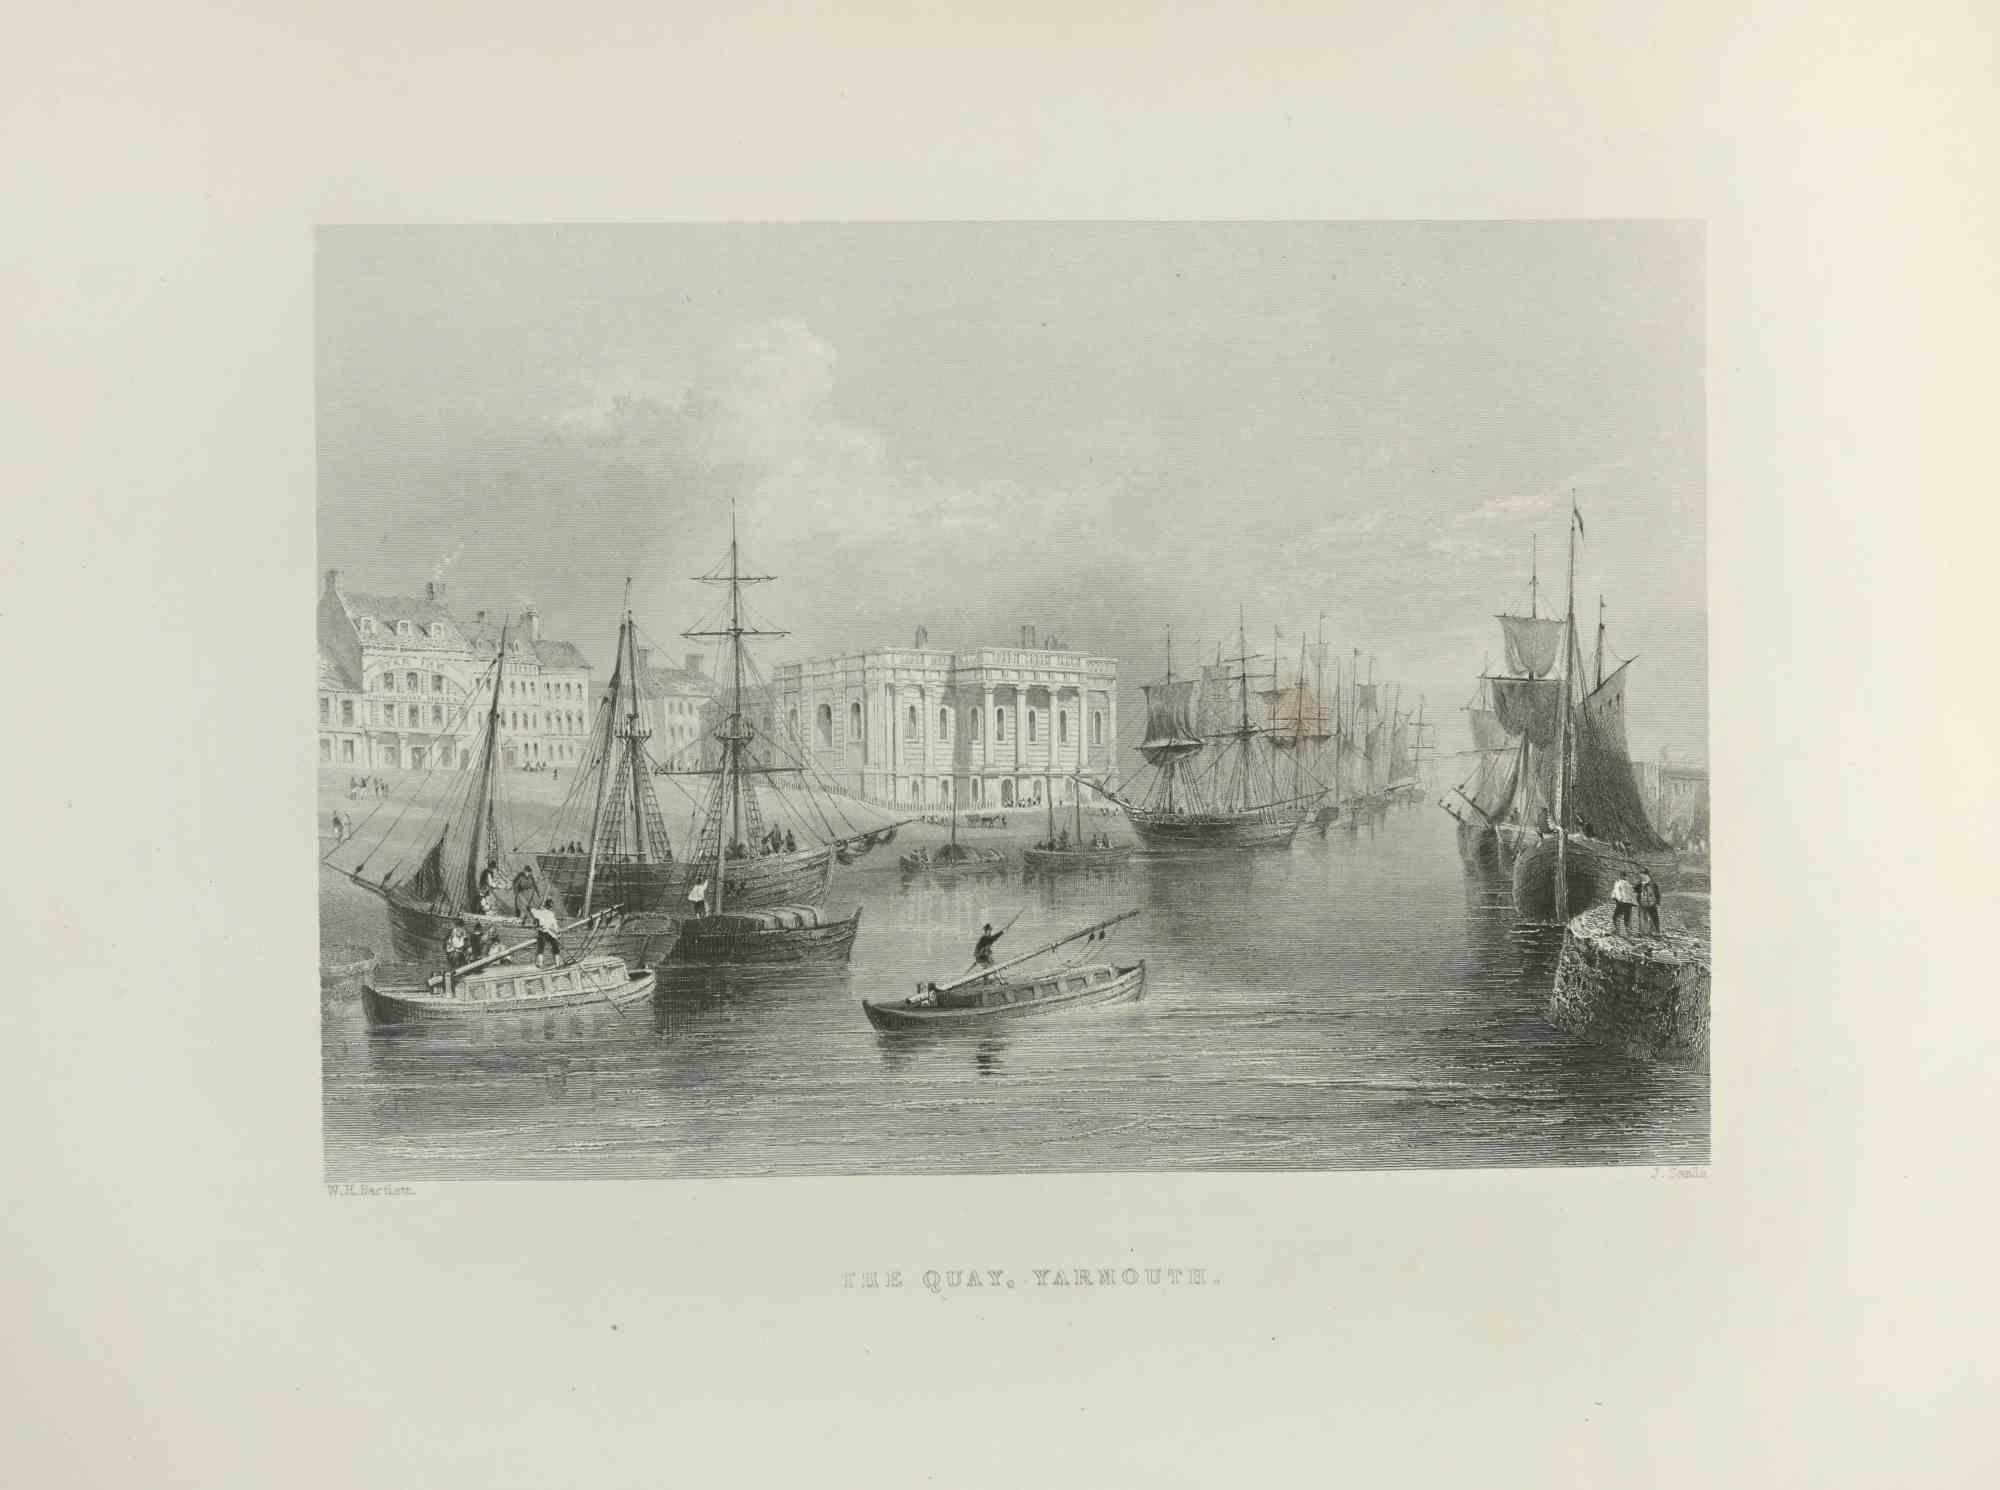 Der Quay, Yarmouth – Kupferstich  Edward Frencis Finden – 1845